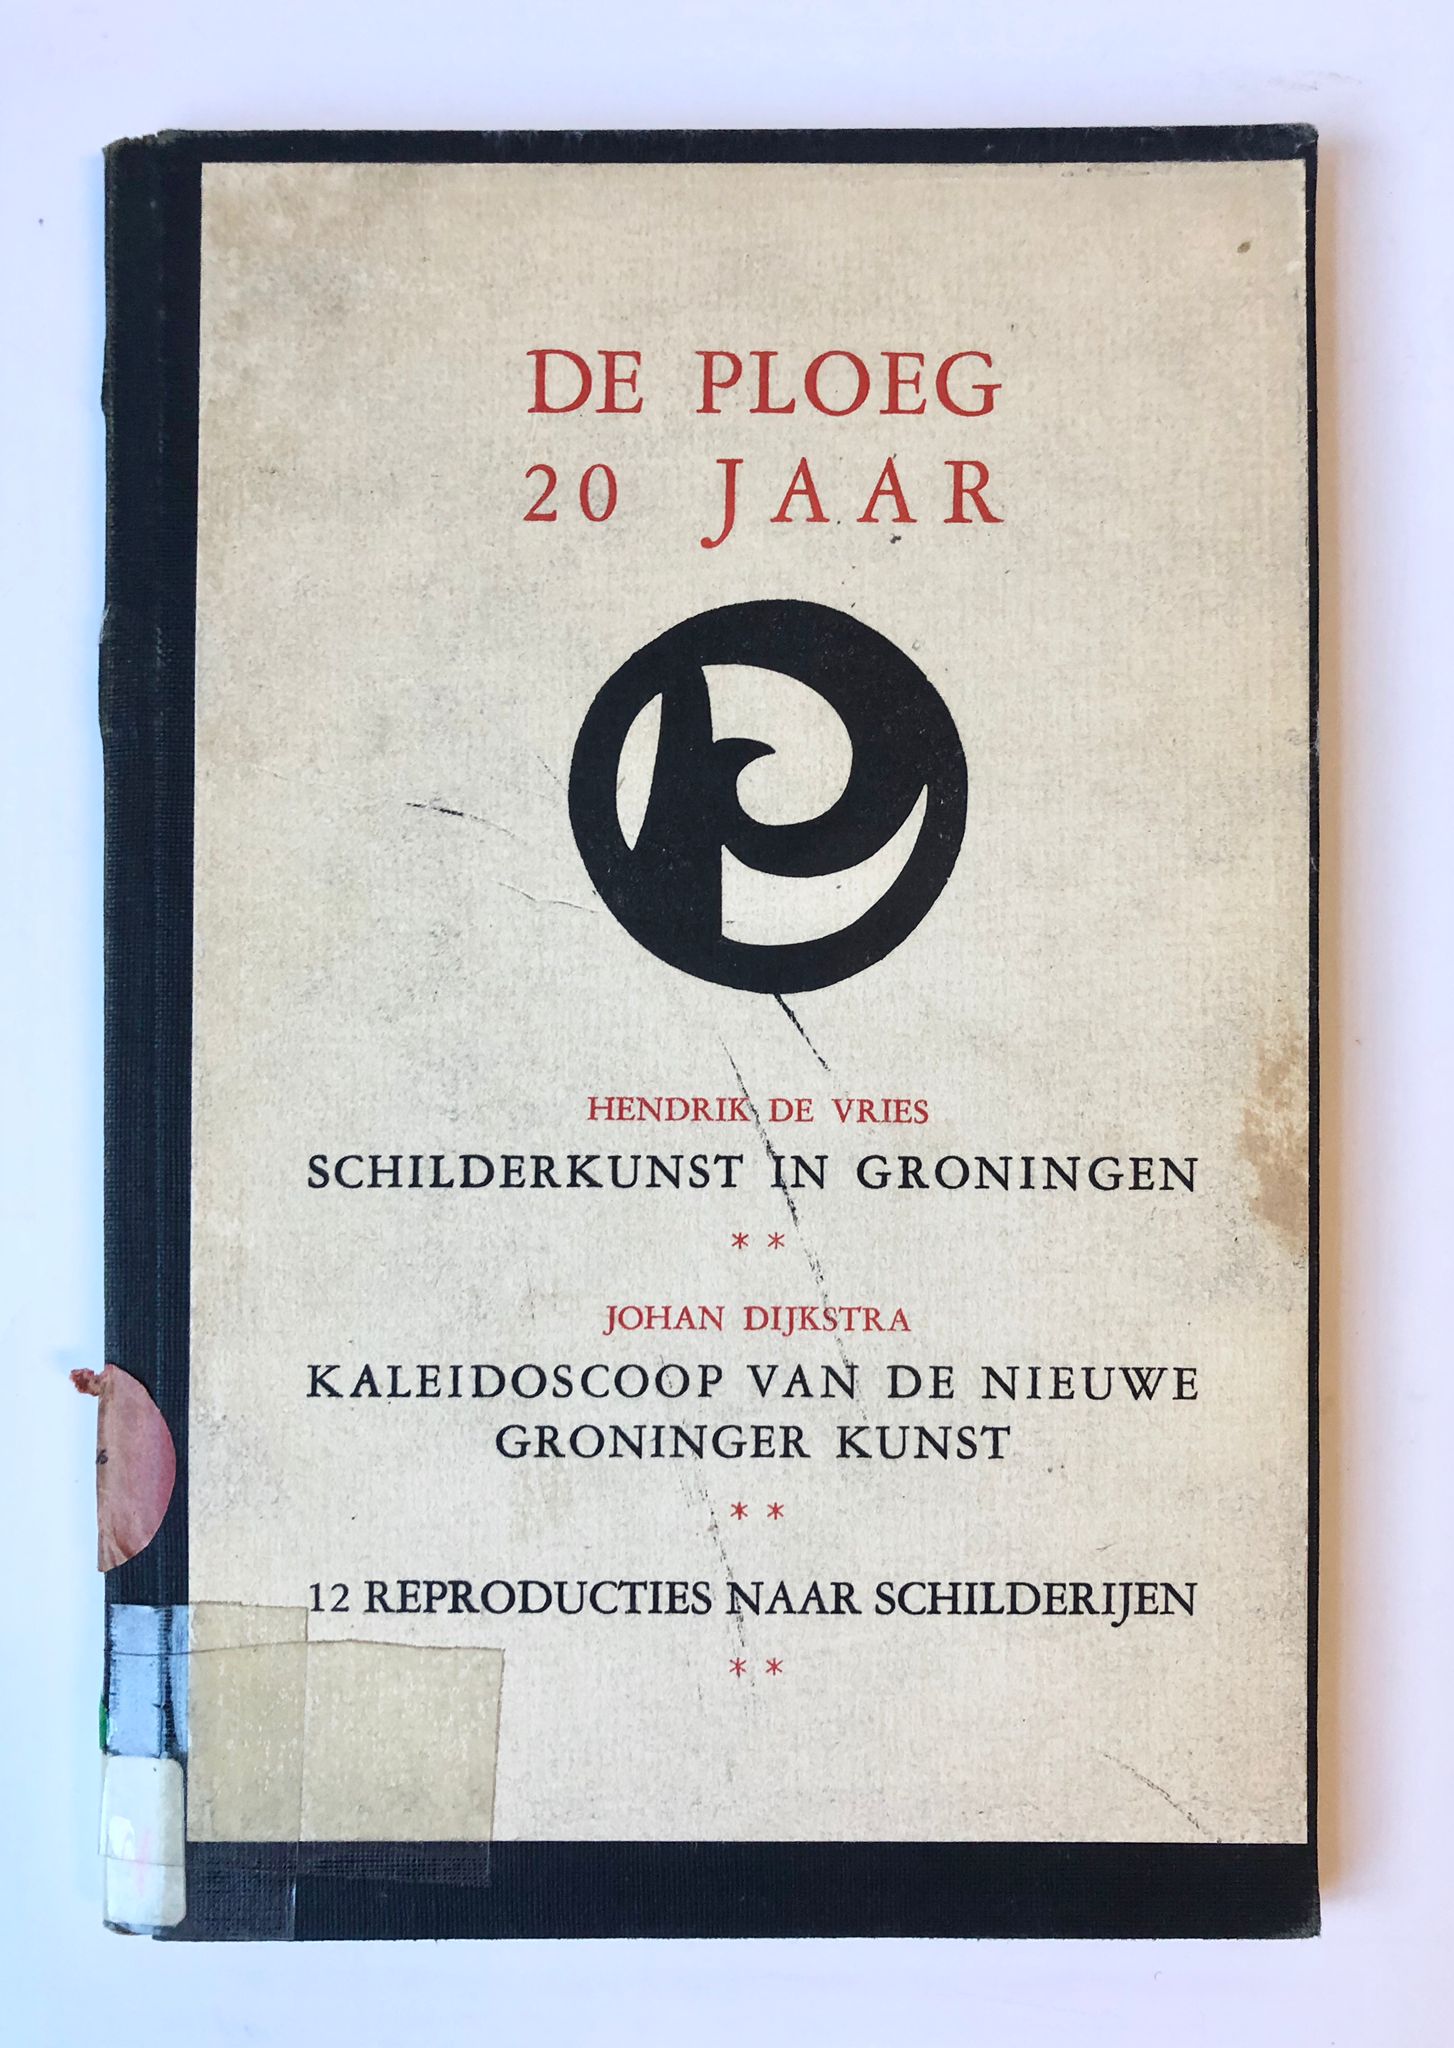 [Groningen, Den Haag] De Ploeg 20 jaar, Schilderkunst in Groningen, Kaleidoscoop van de nieuwe Groninger kunst, 12 Reproducties naar schilderijen, H. P. Leopold’s uitgevers, Den Haag, 1938, 20 pp.